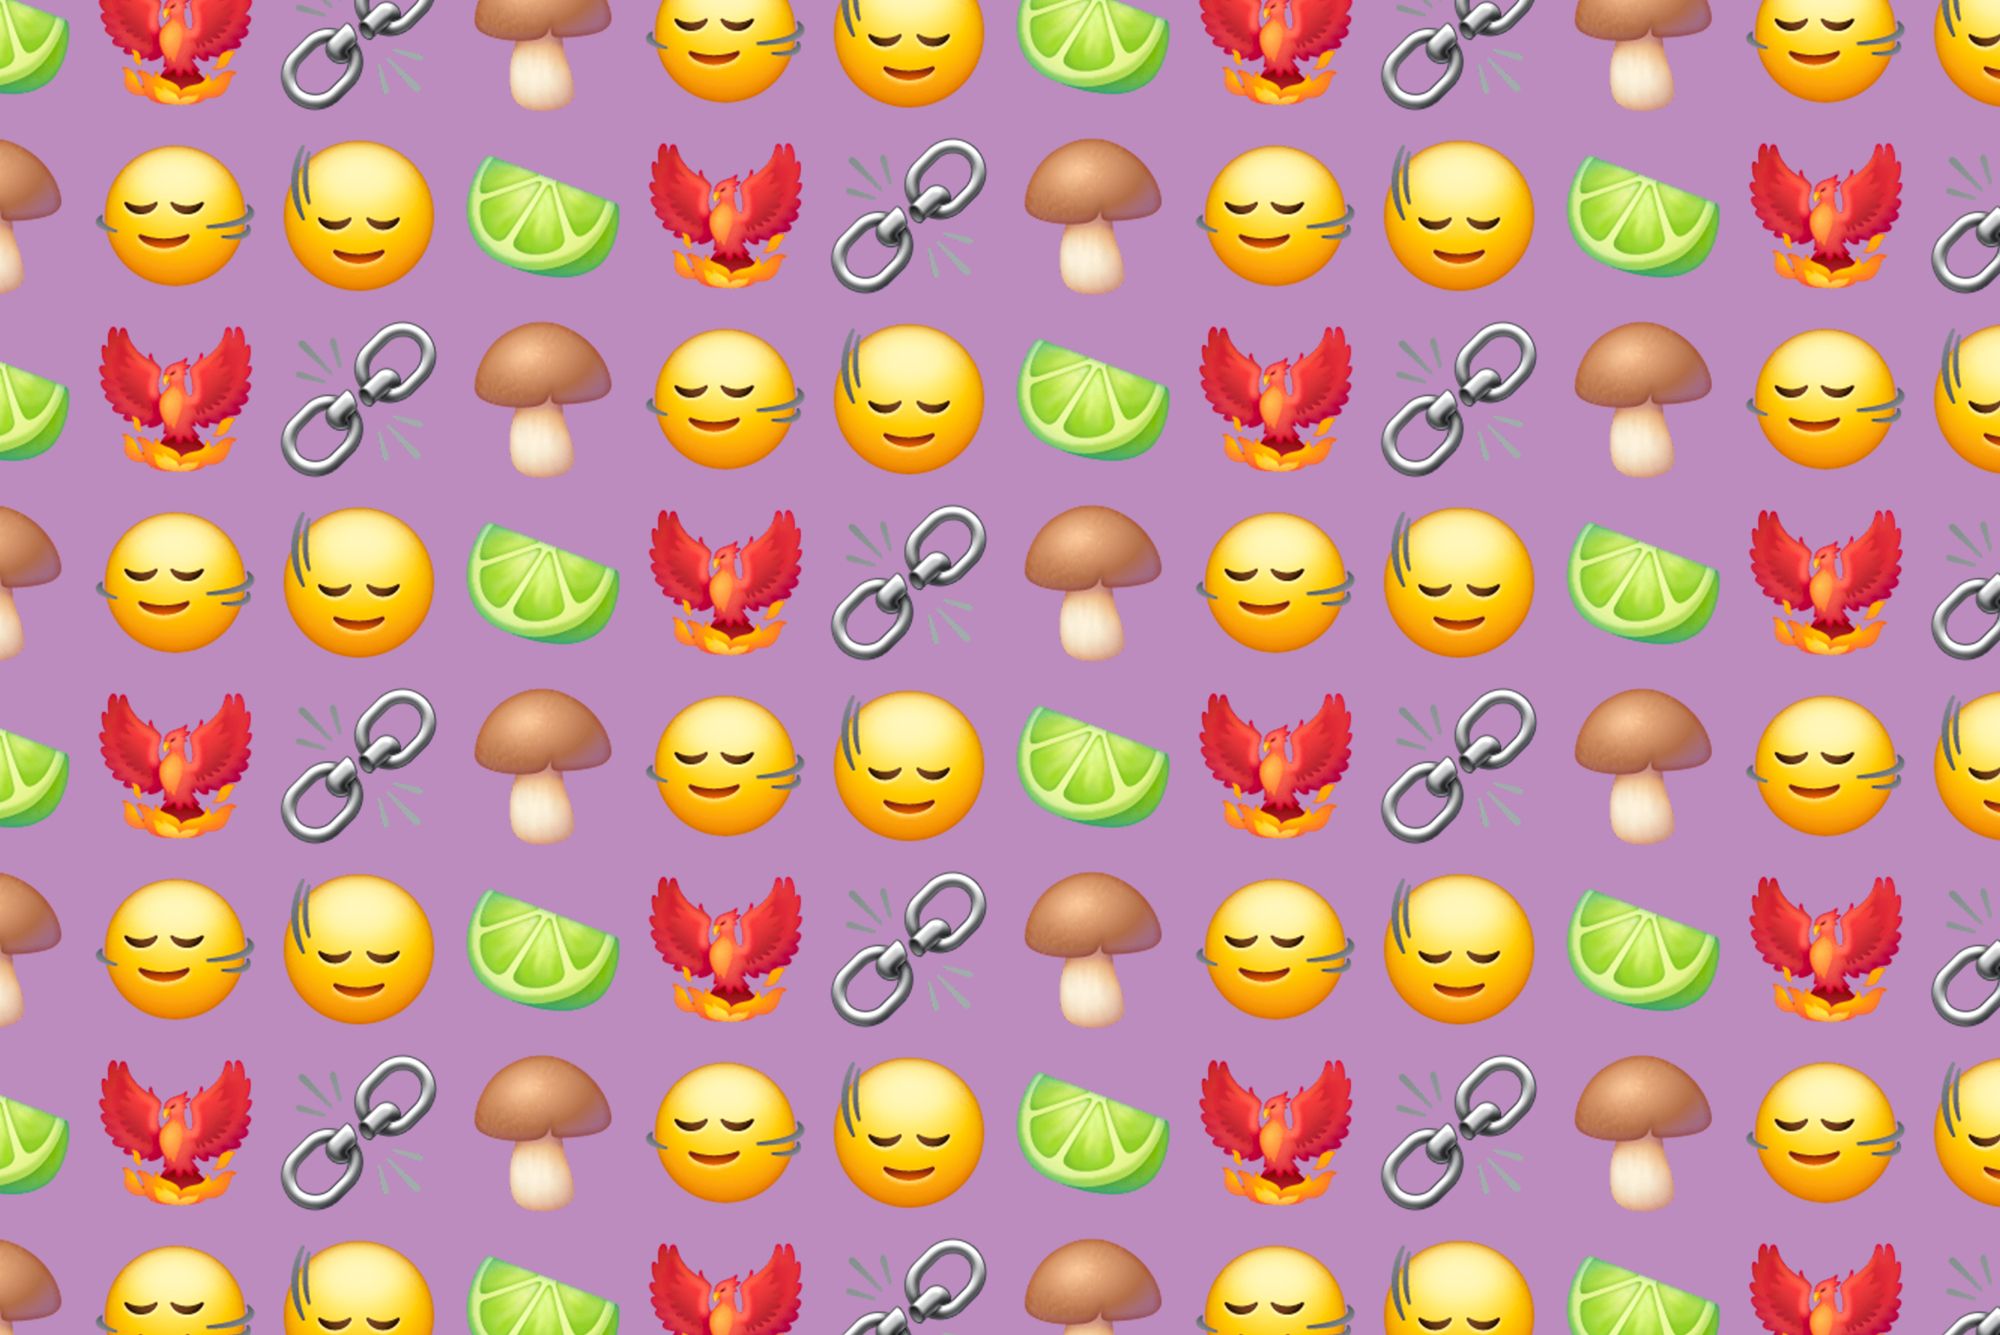 what does moyai emoji mean｜TikTok Search